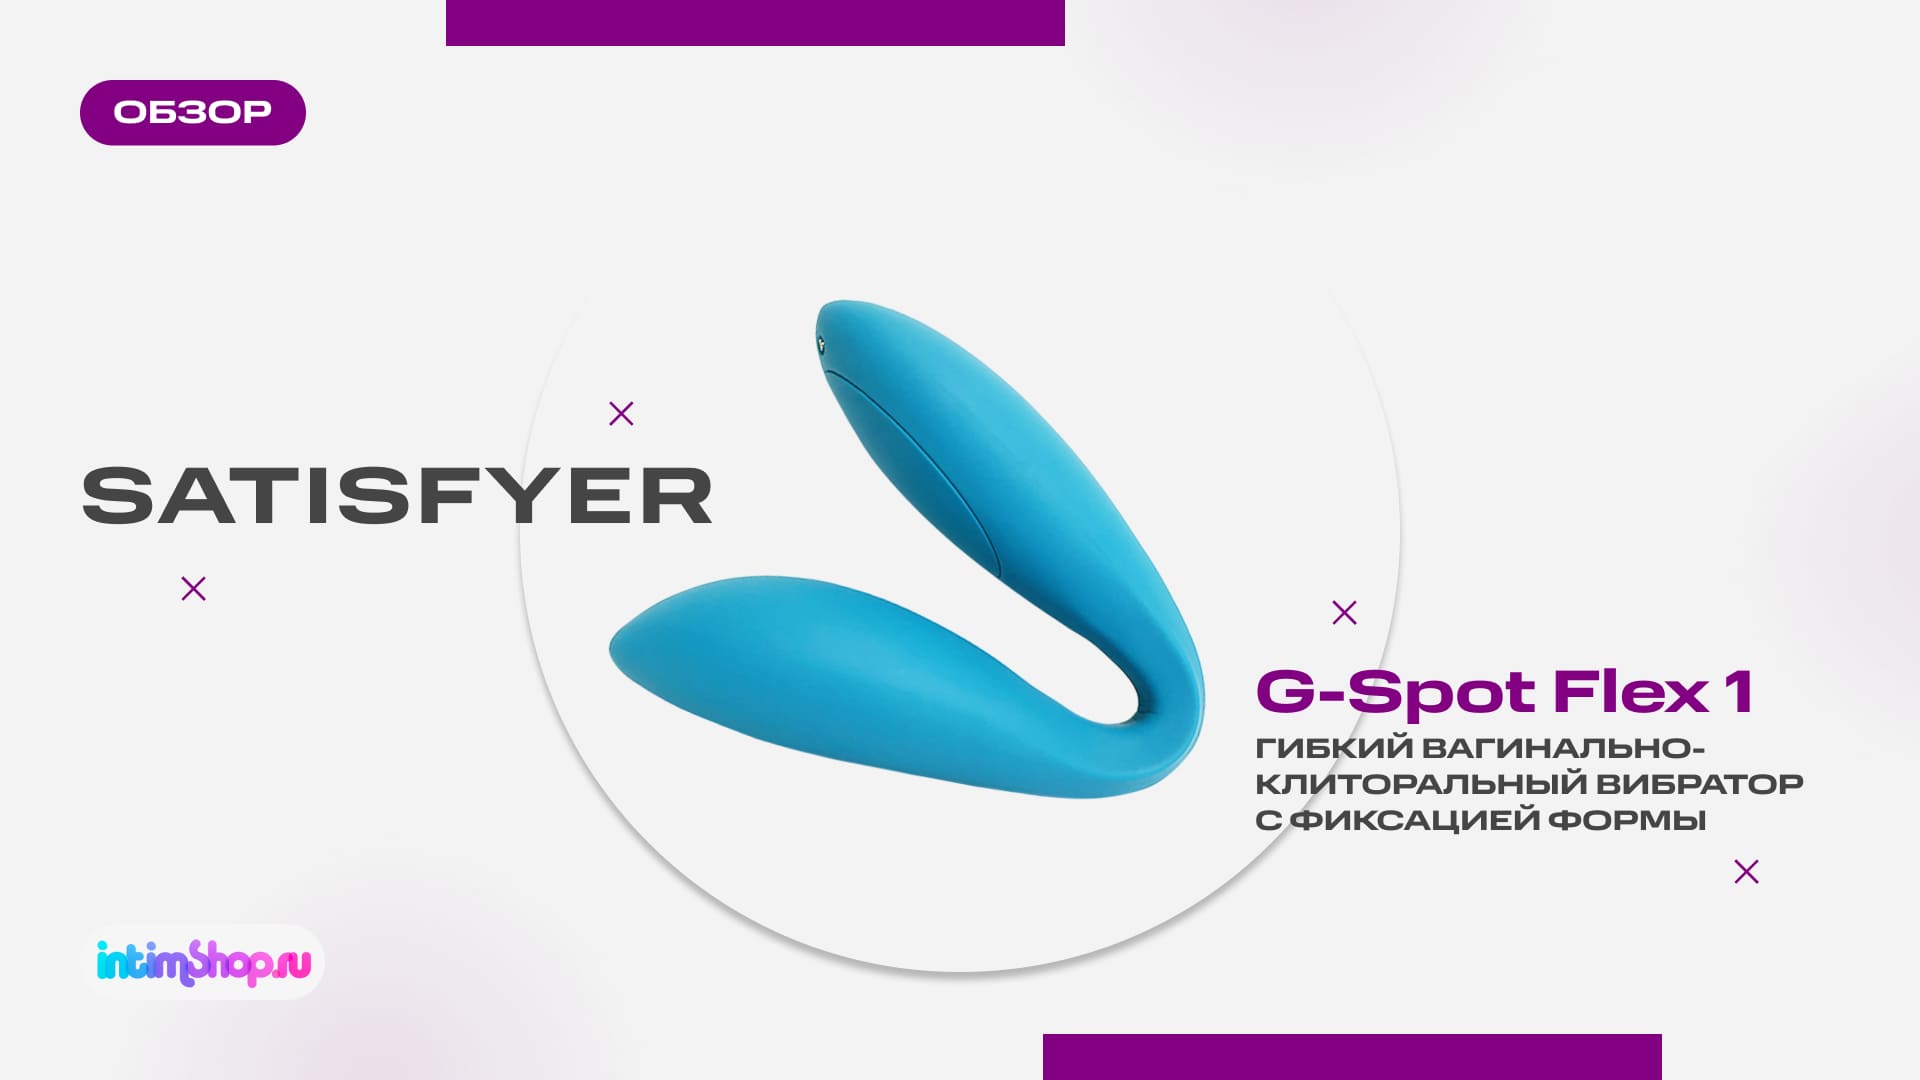 Вагинально-клиторальный вибратор с фиксацией формы Satisfyer G-Spot Flex 1